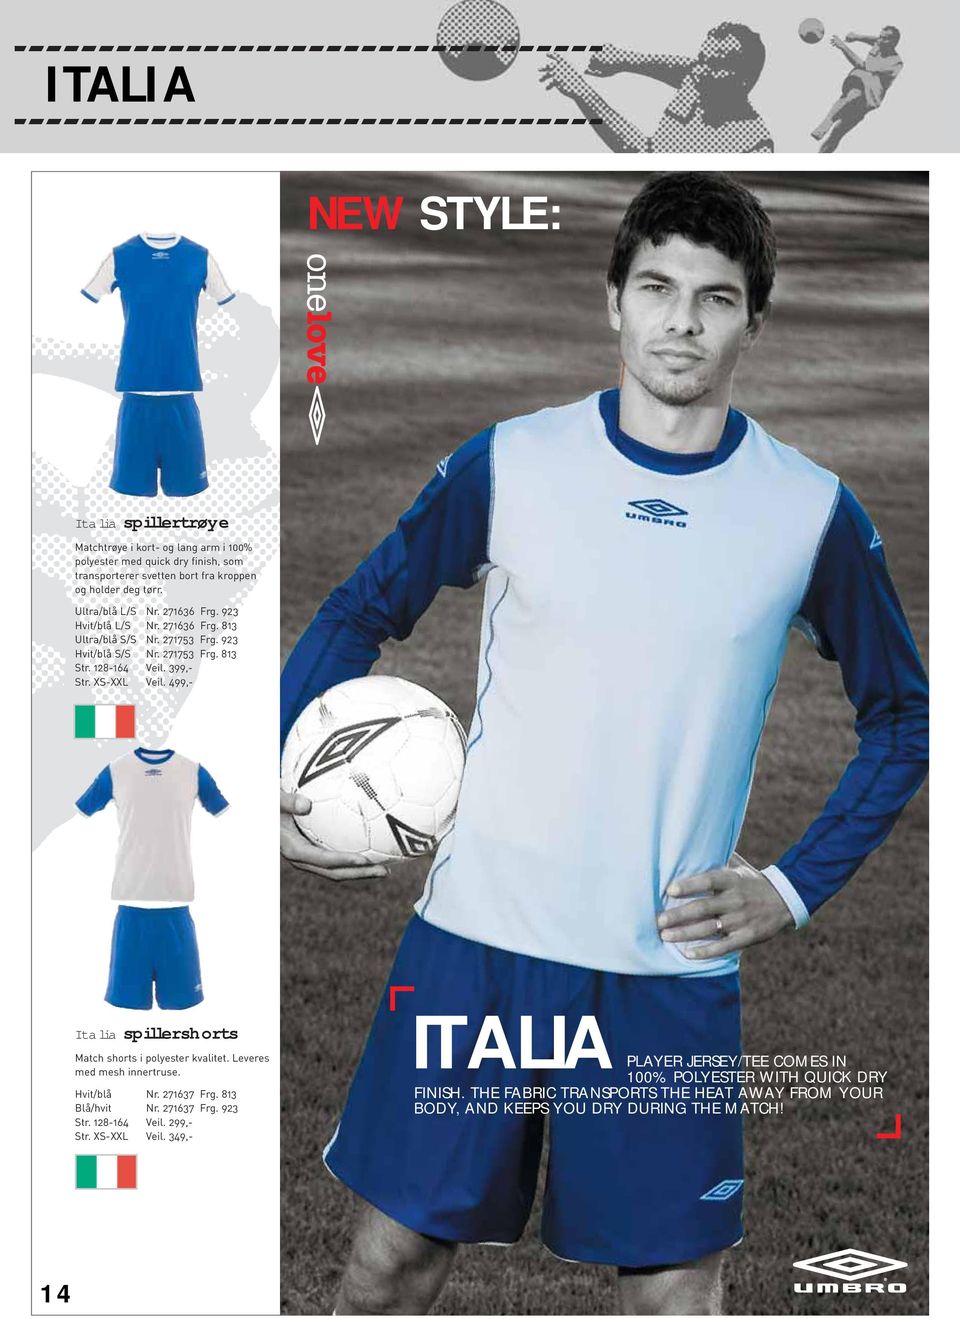 499,- Italia spillershorts Match shorts i polyester kvalitet. Leveres med mesh innertruse. Hvit/blå Nr. 271637 Frg. 813 Blå/hvit Nr. 271637 Frg. 923 Str. 128-164 Veil.